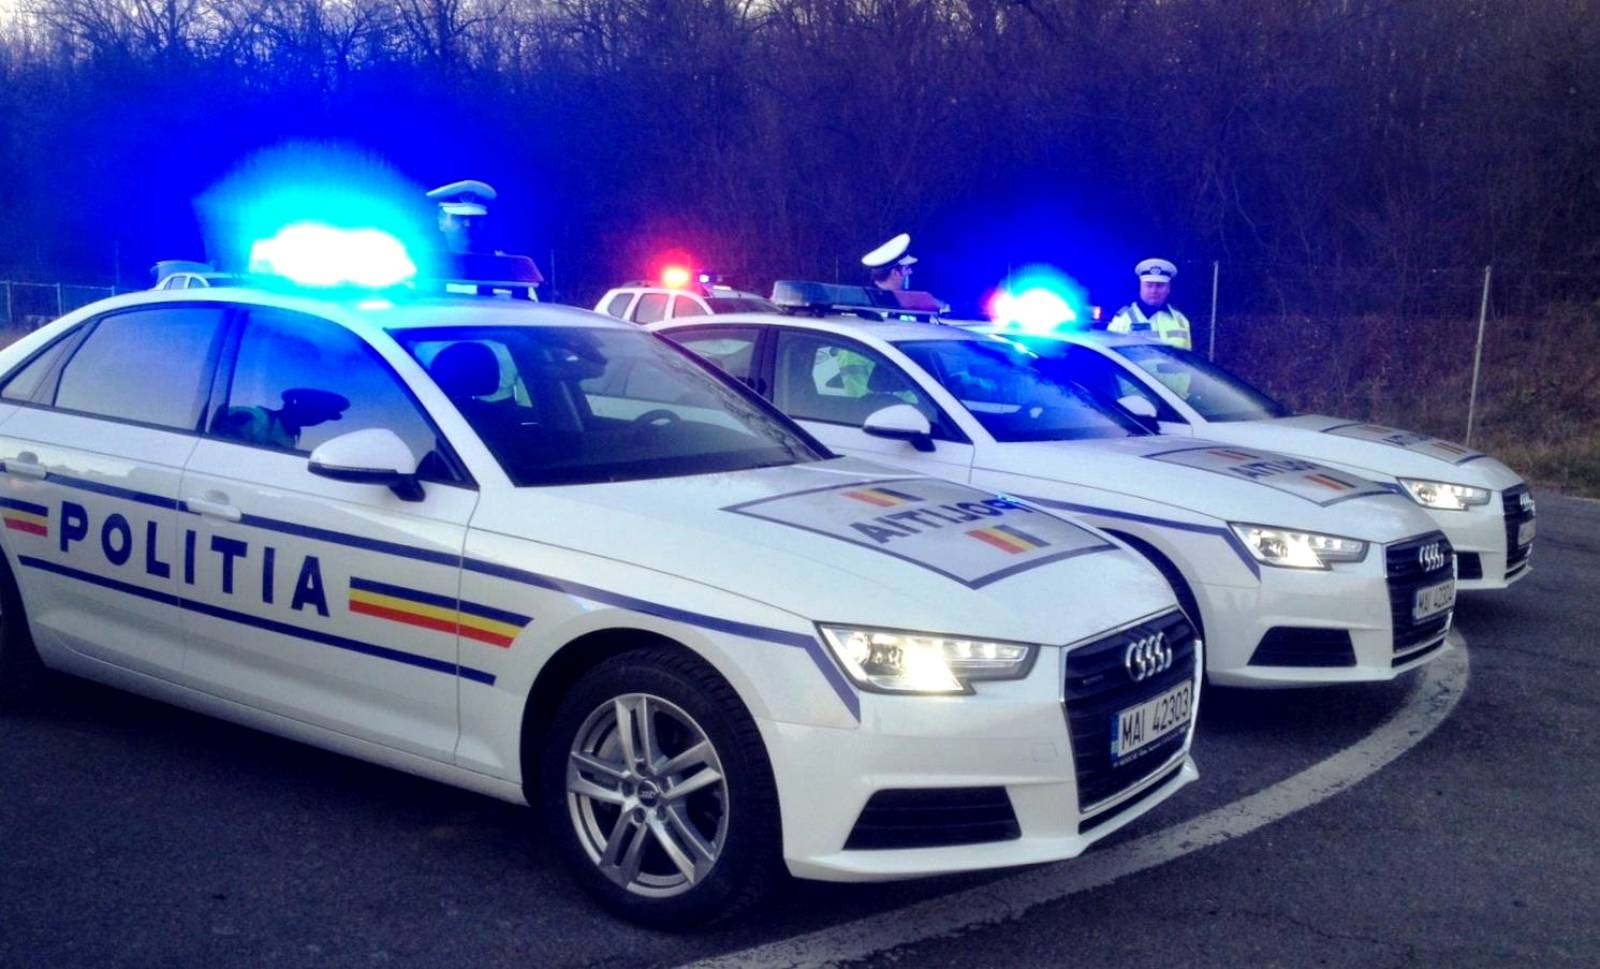 Condiciones del tráfico nocturno de la policía rumana